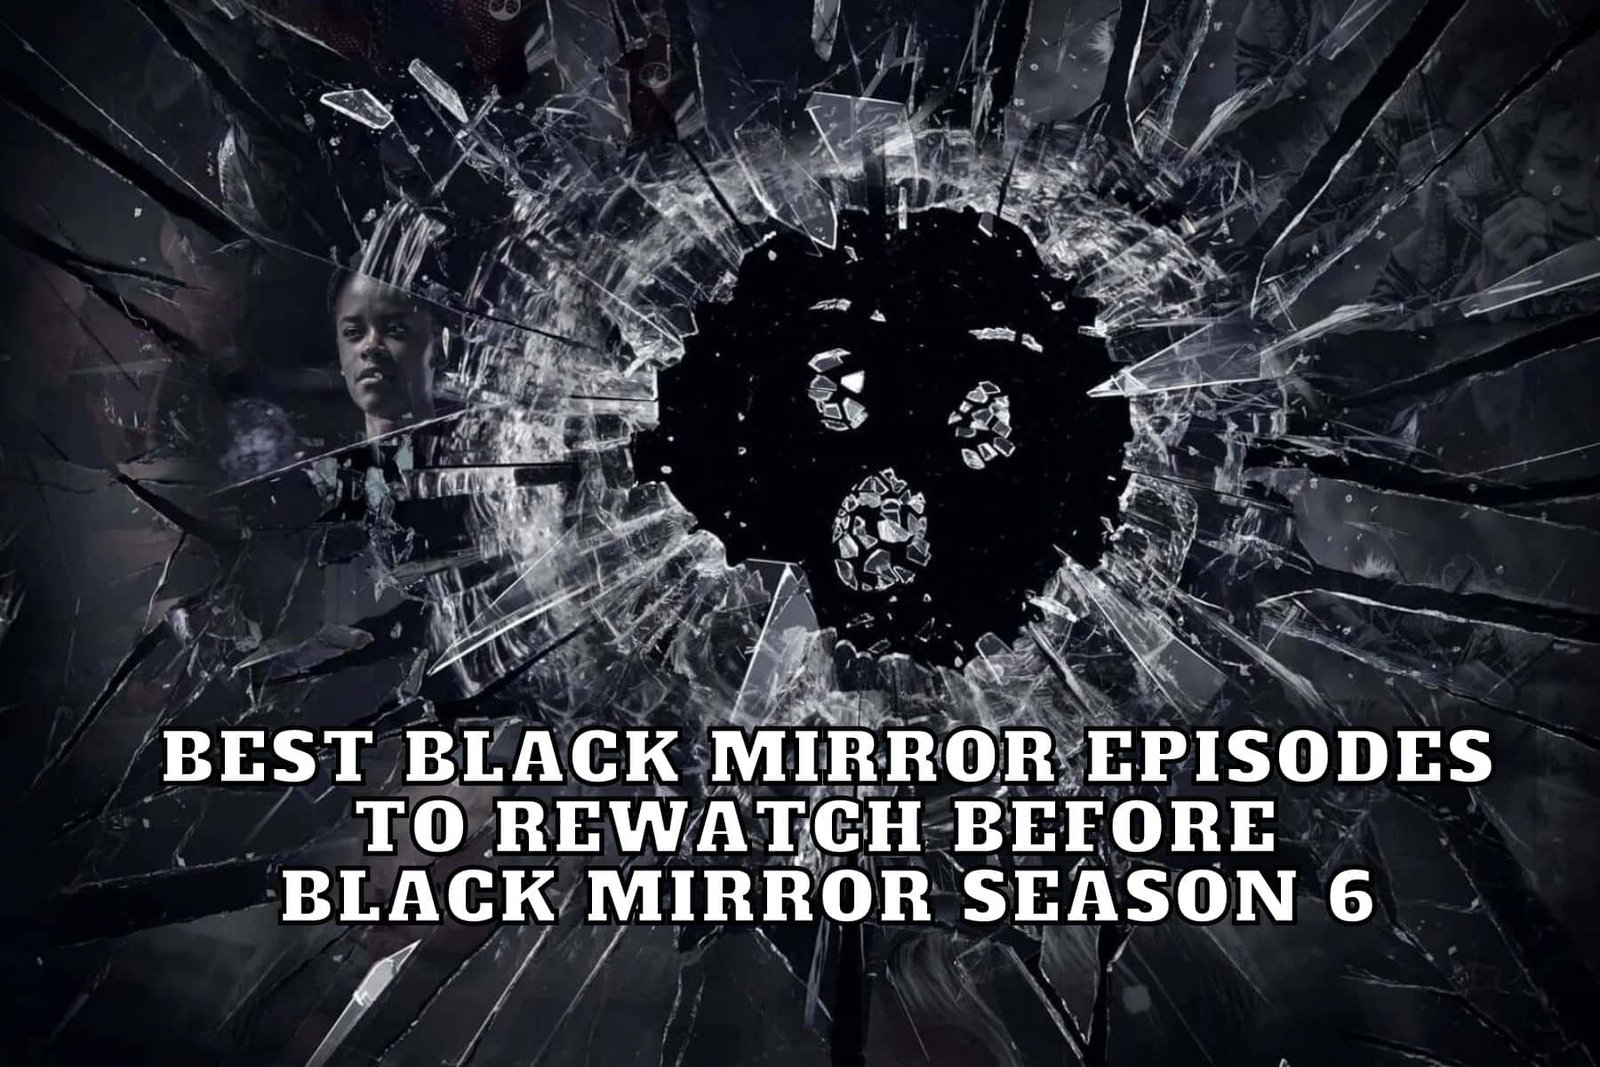 Best Black Mirror Episodes to Rewatch Before Black Mirror Season 6